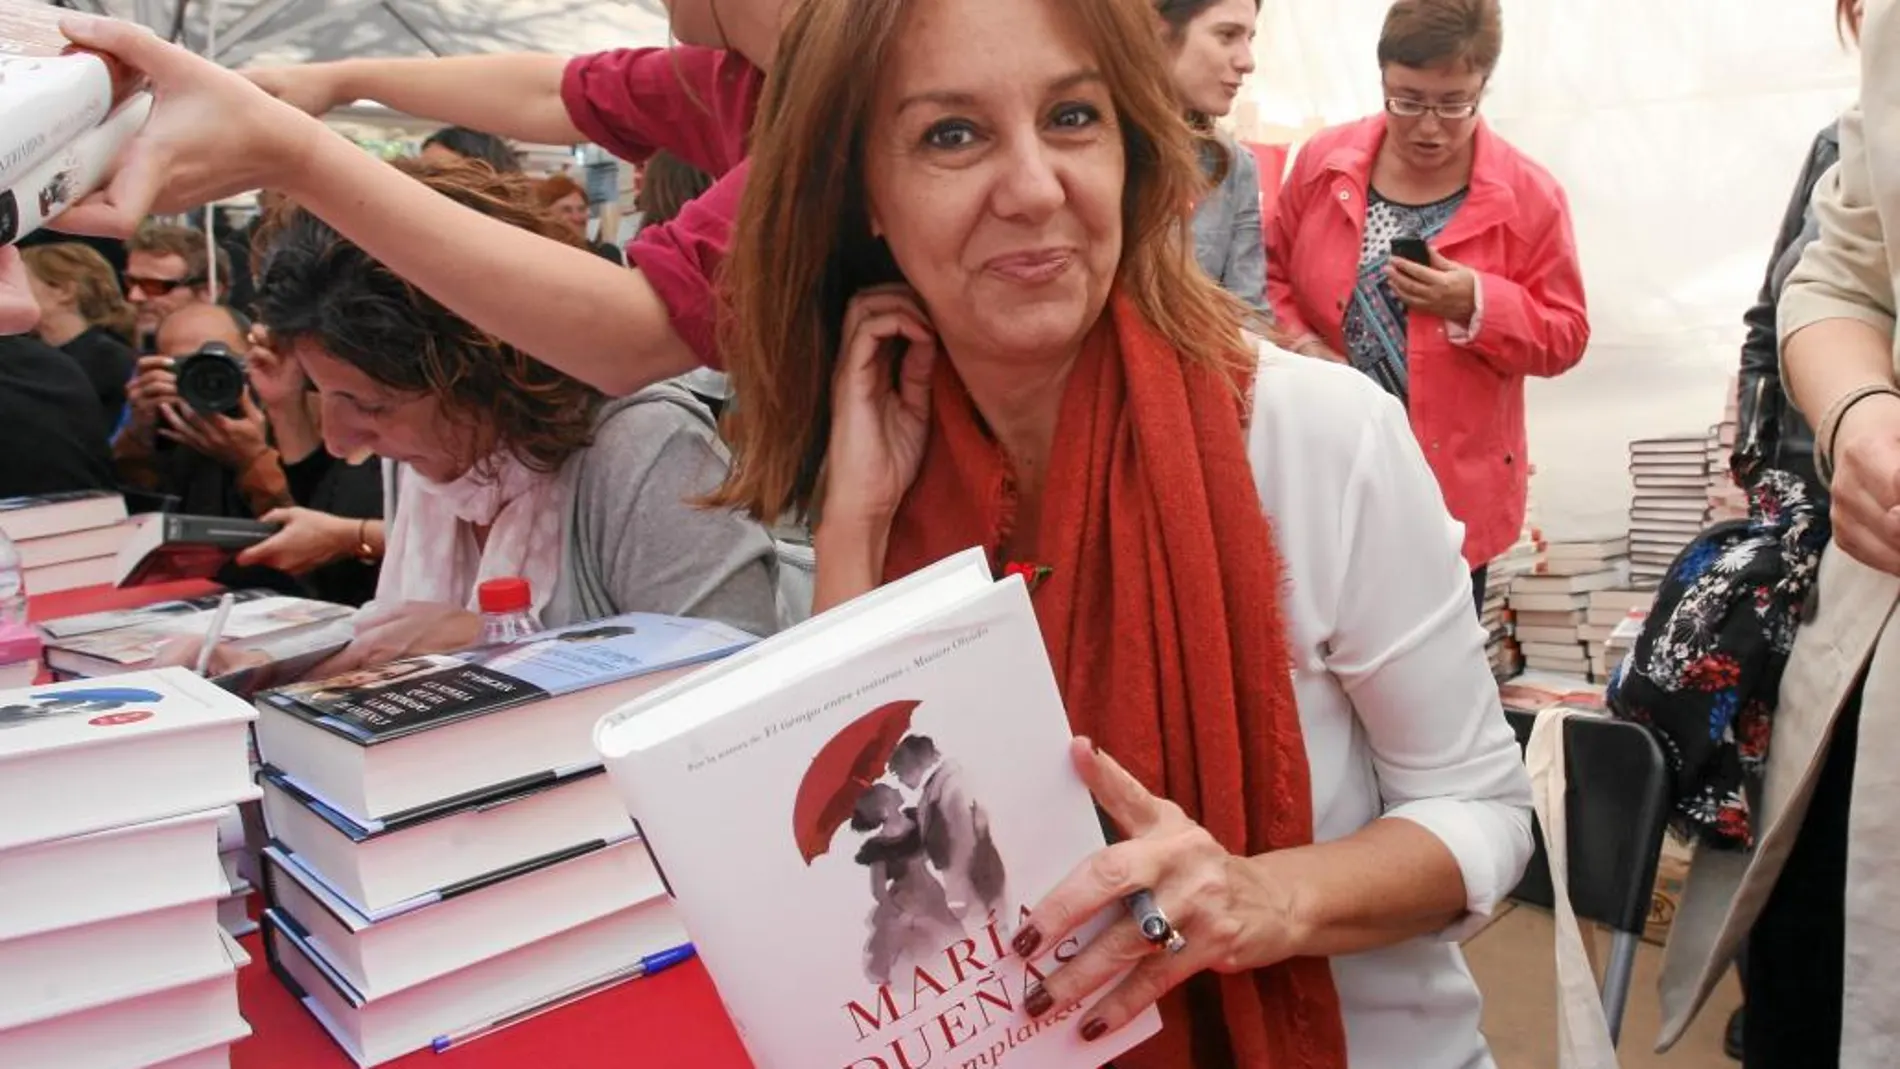 María Dueñas fue la gran protagonista de este Sant Jordi con su nueva novela, protagonizada por Mauro Larrea